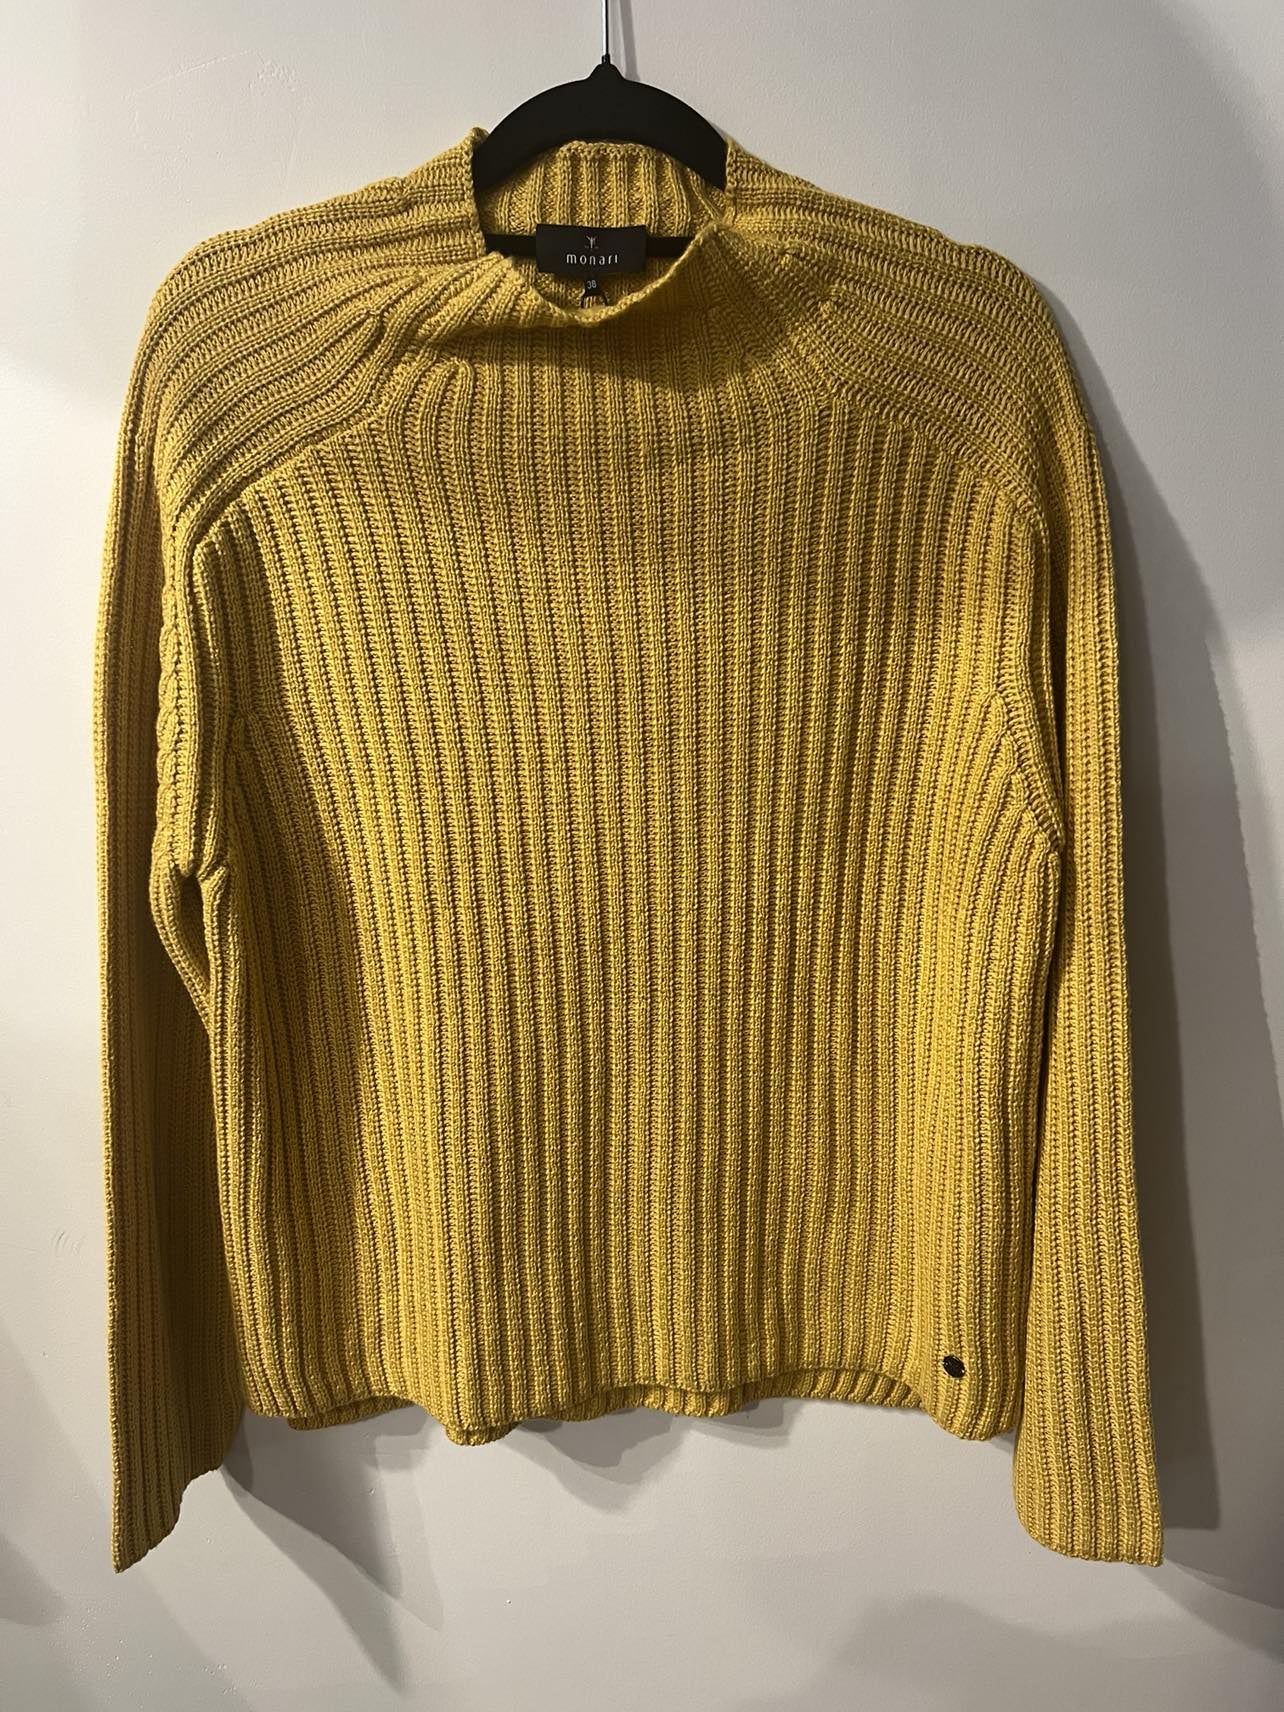 Monari Rib Sweater Cotton Blend - Honey